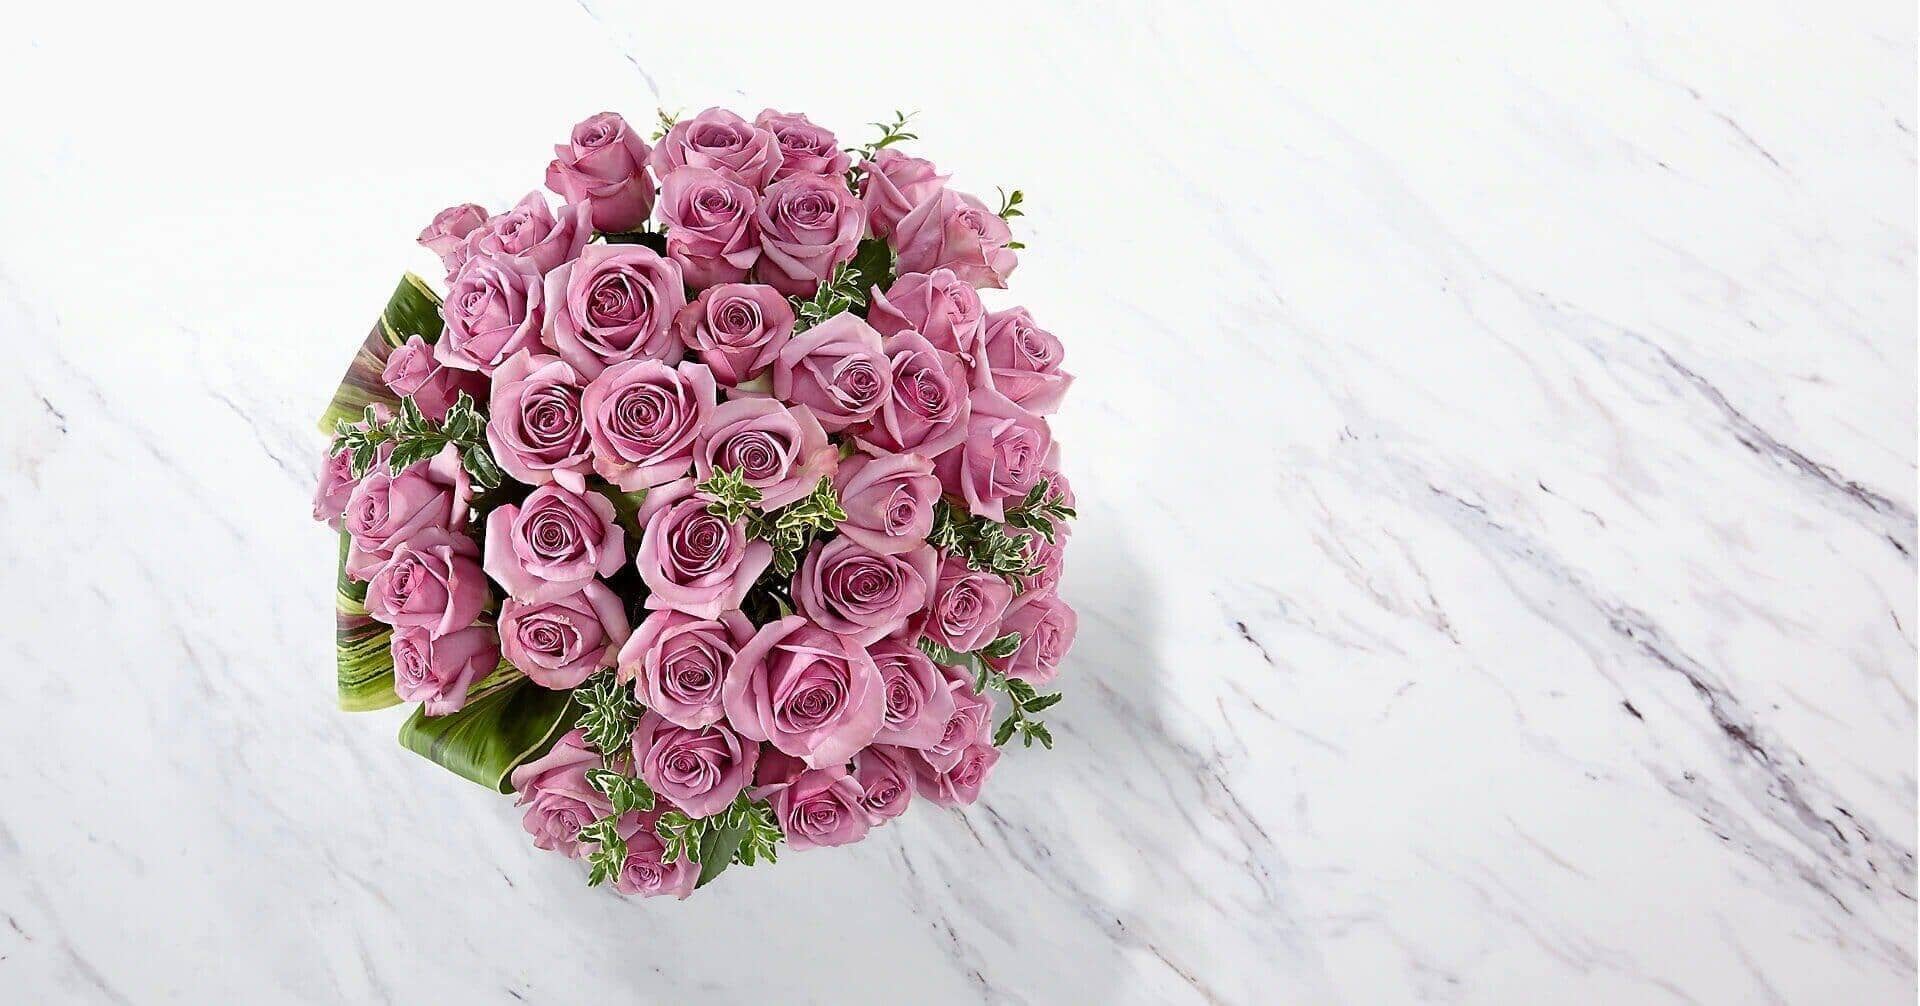 Sensational Luxury™ Rose Bouquet